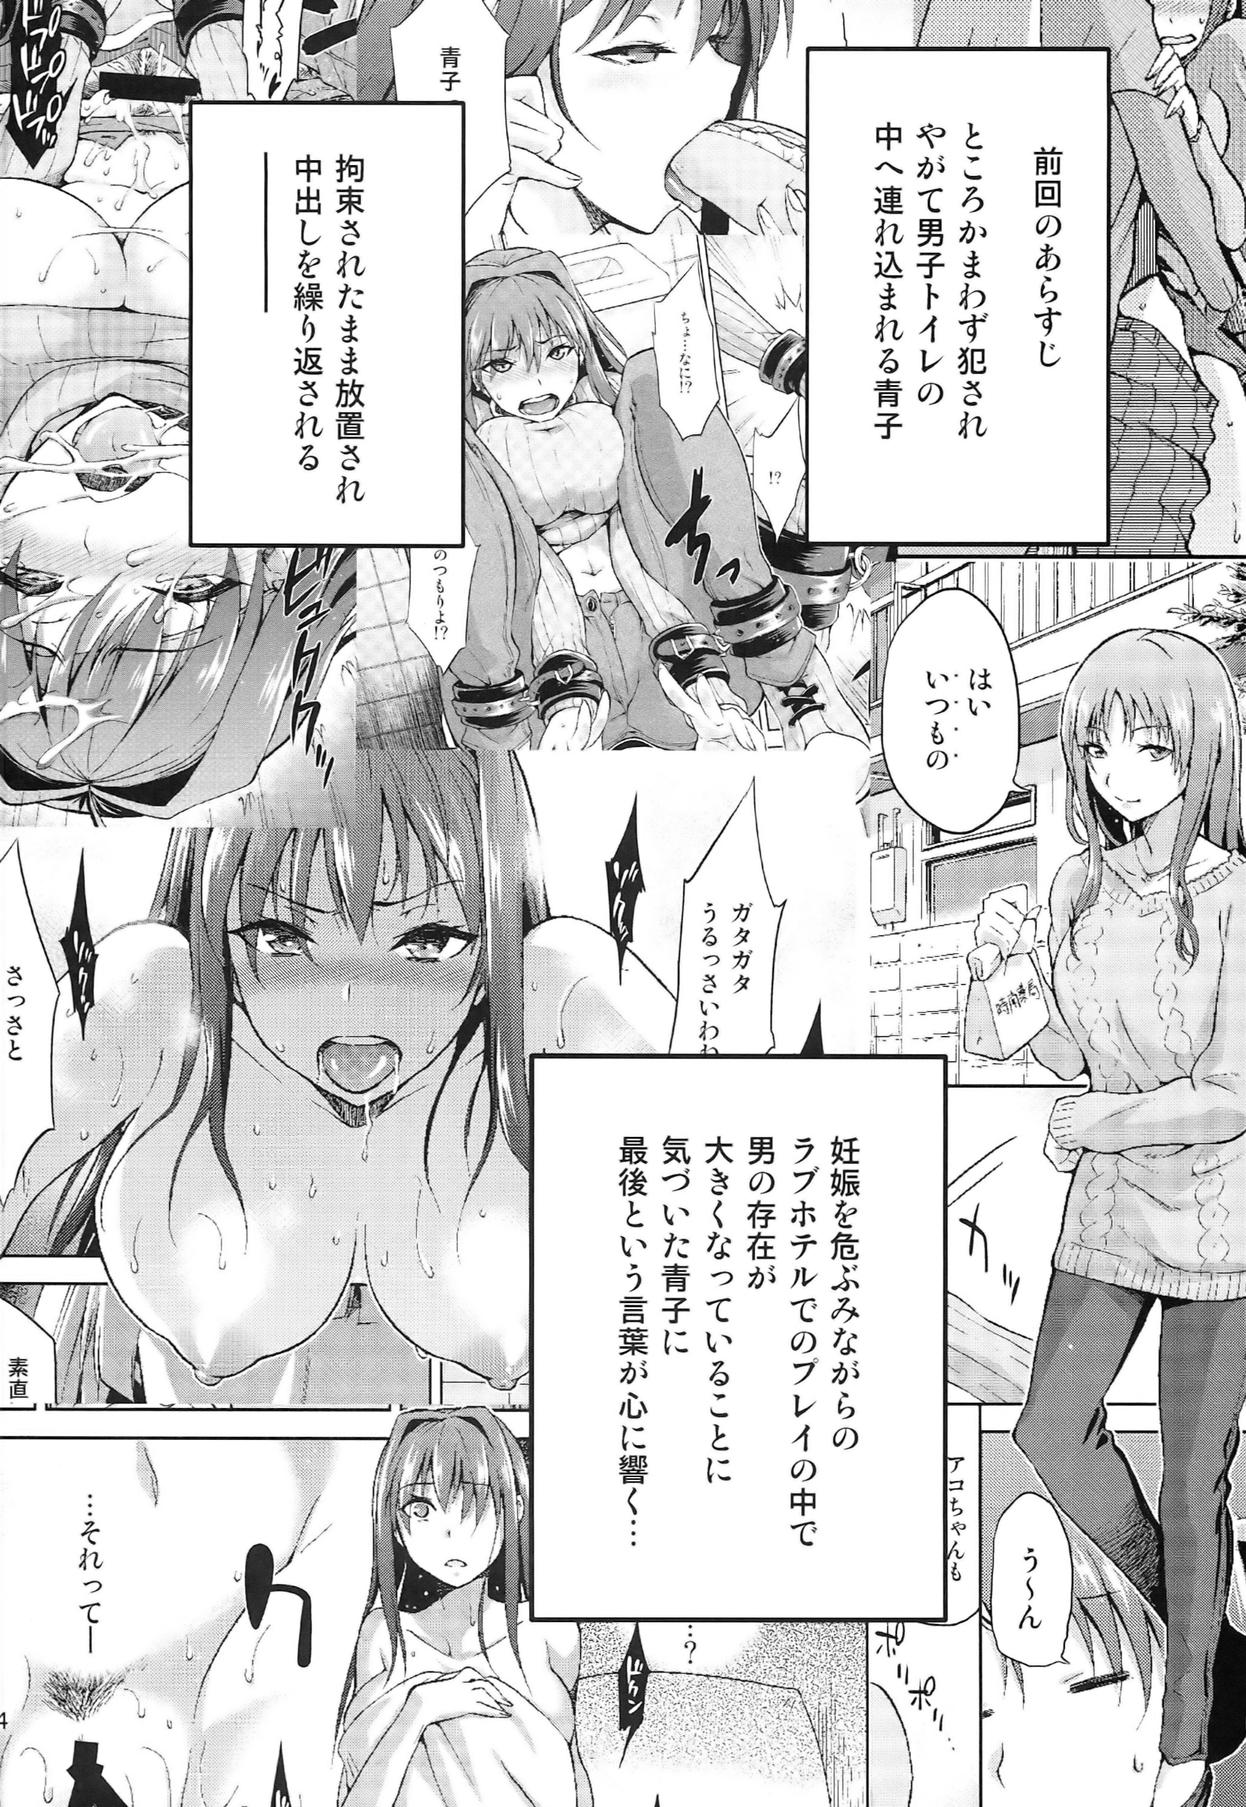 Bubblebutt Aoko BLUE5 Zenpen - Mahou tsukai no yoru Threesome - Page 4